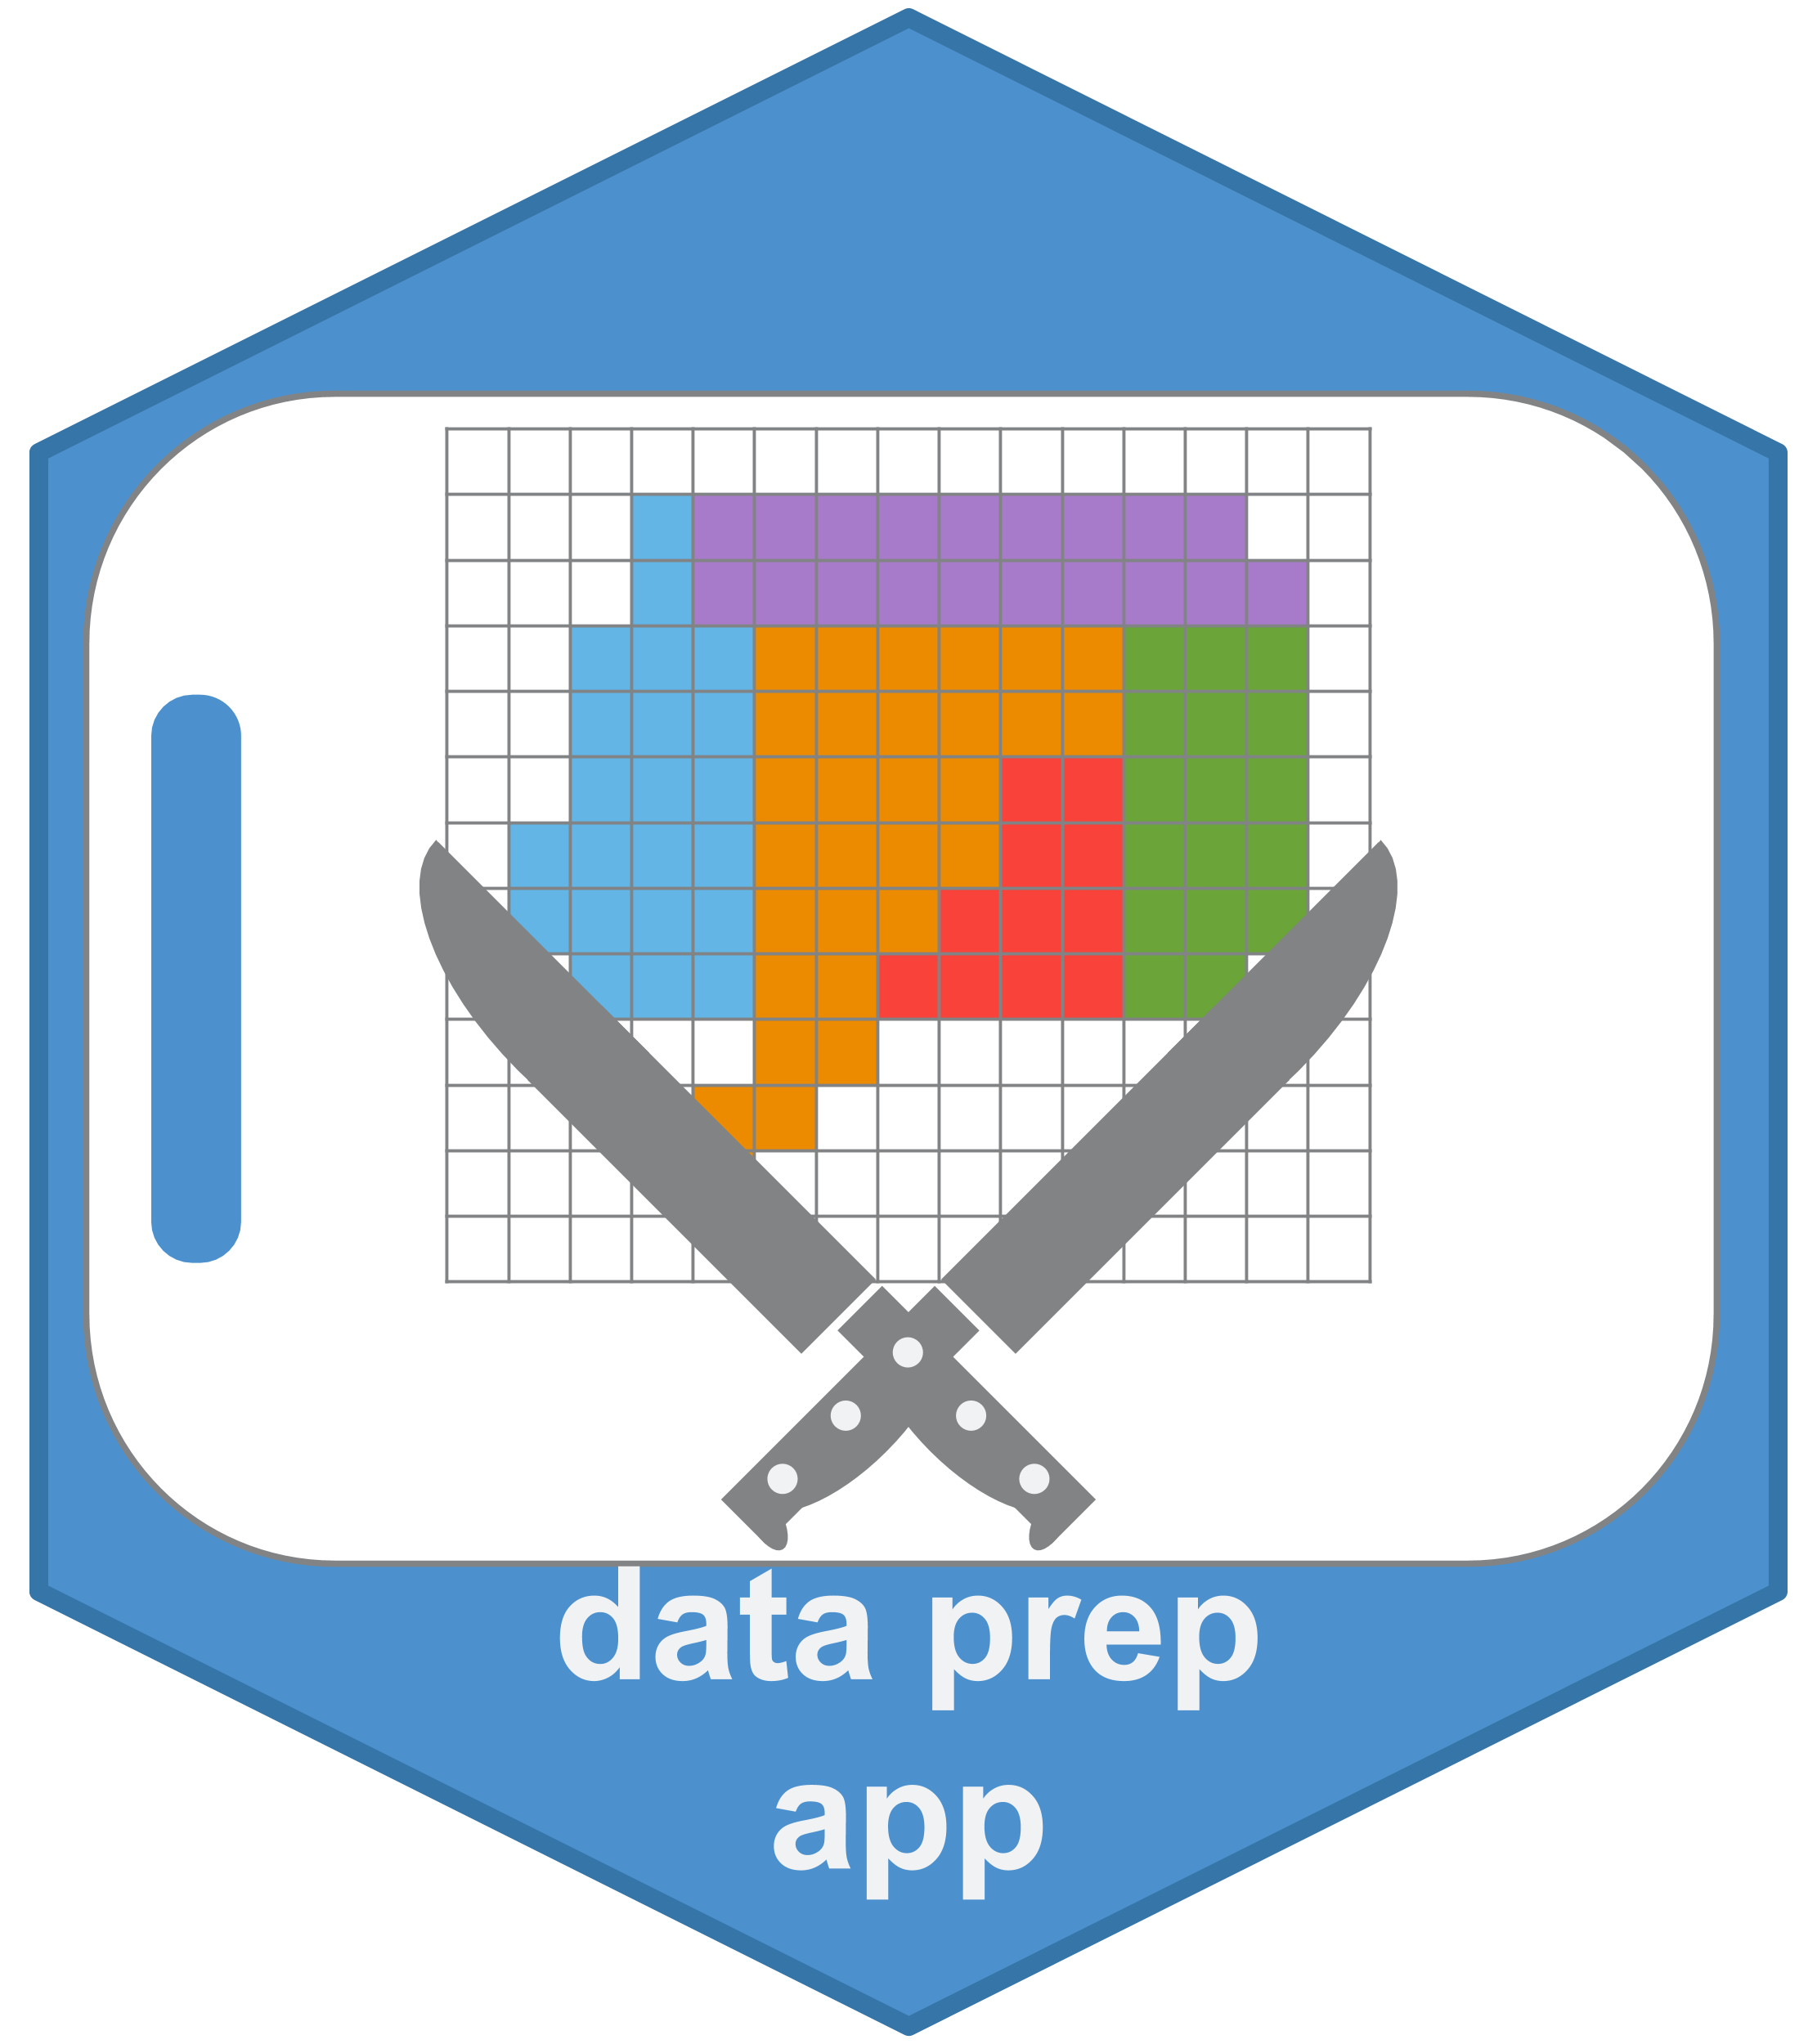 dataprep_app_logo.png